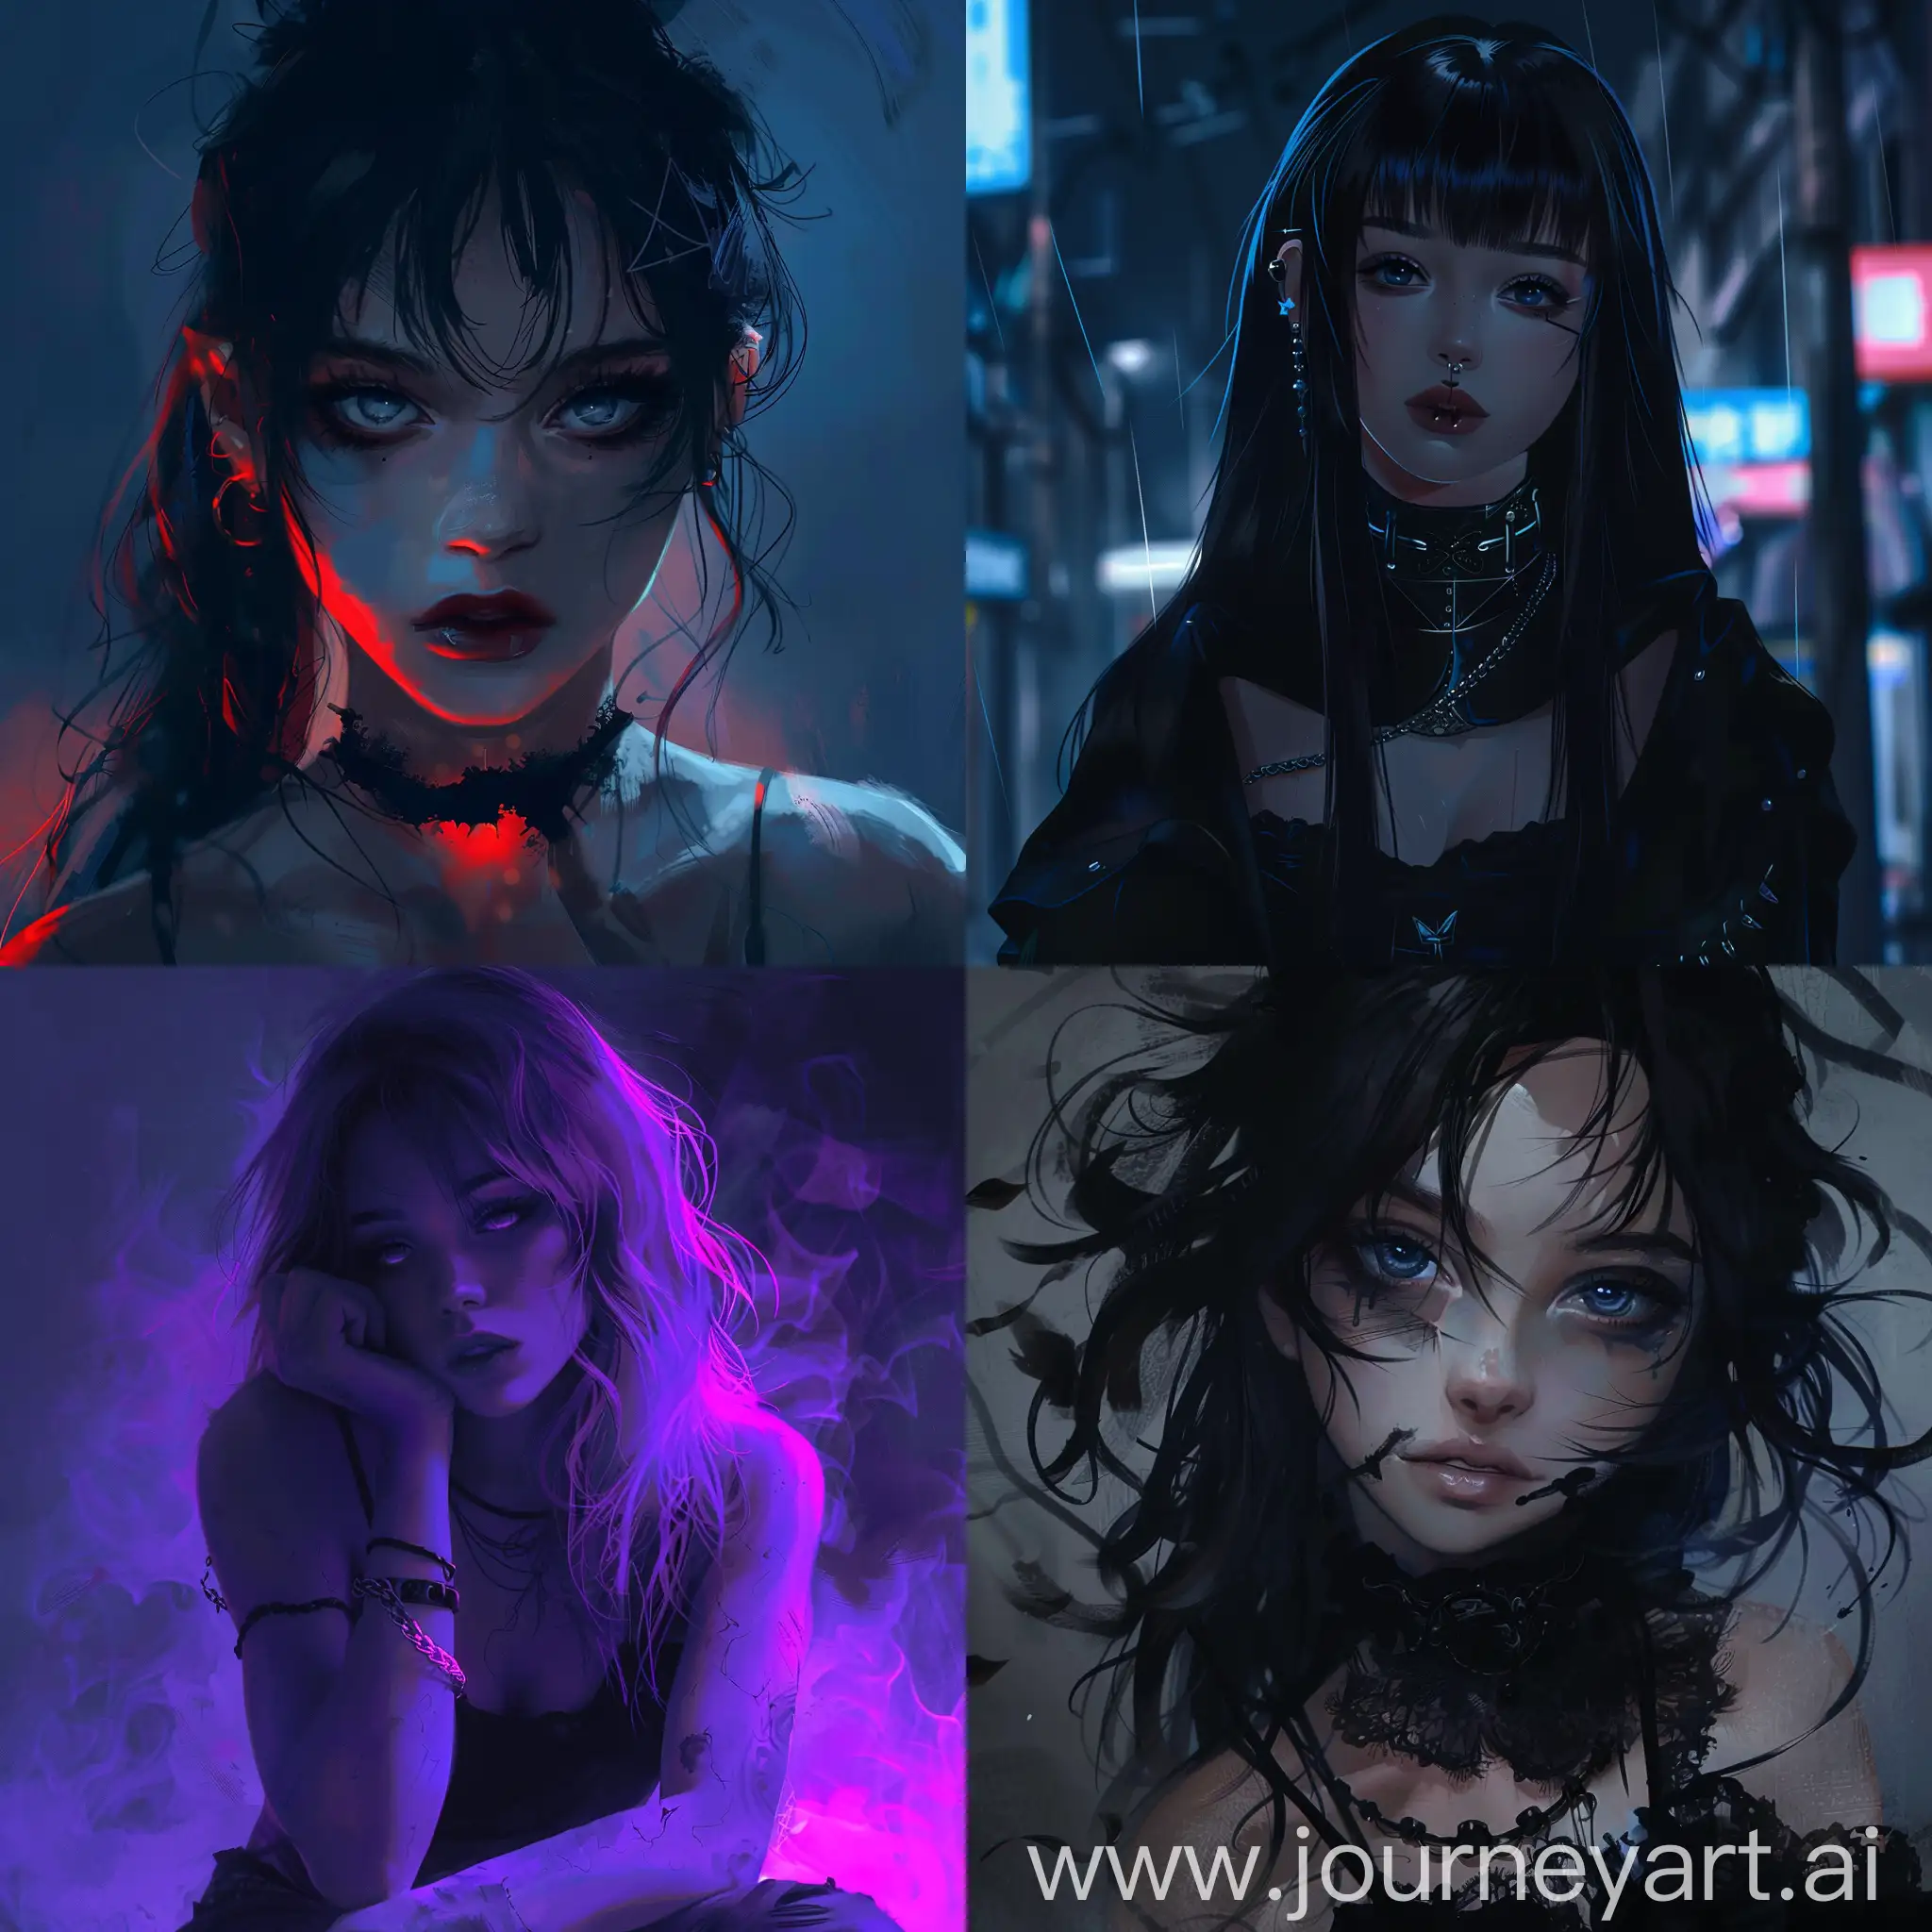 Dark-Anime-Girl-Avatar-with-Mysterious-Aura